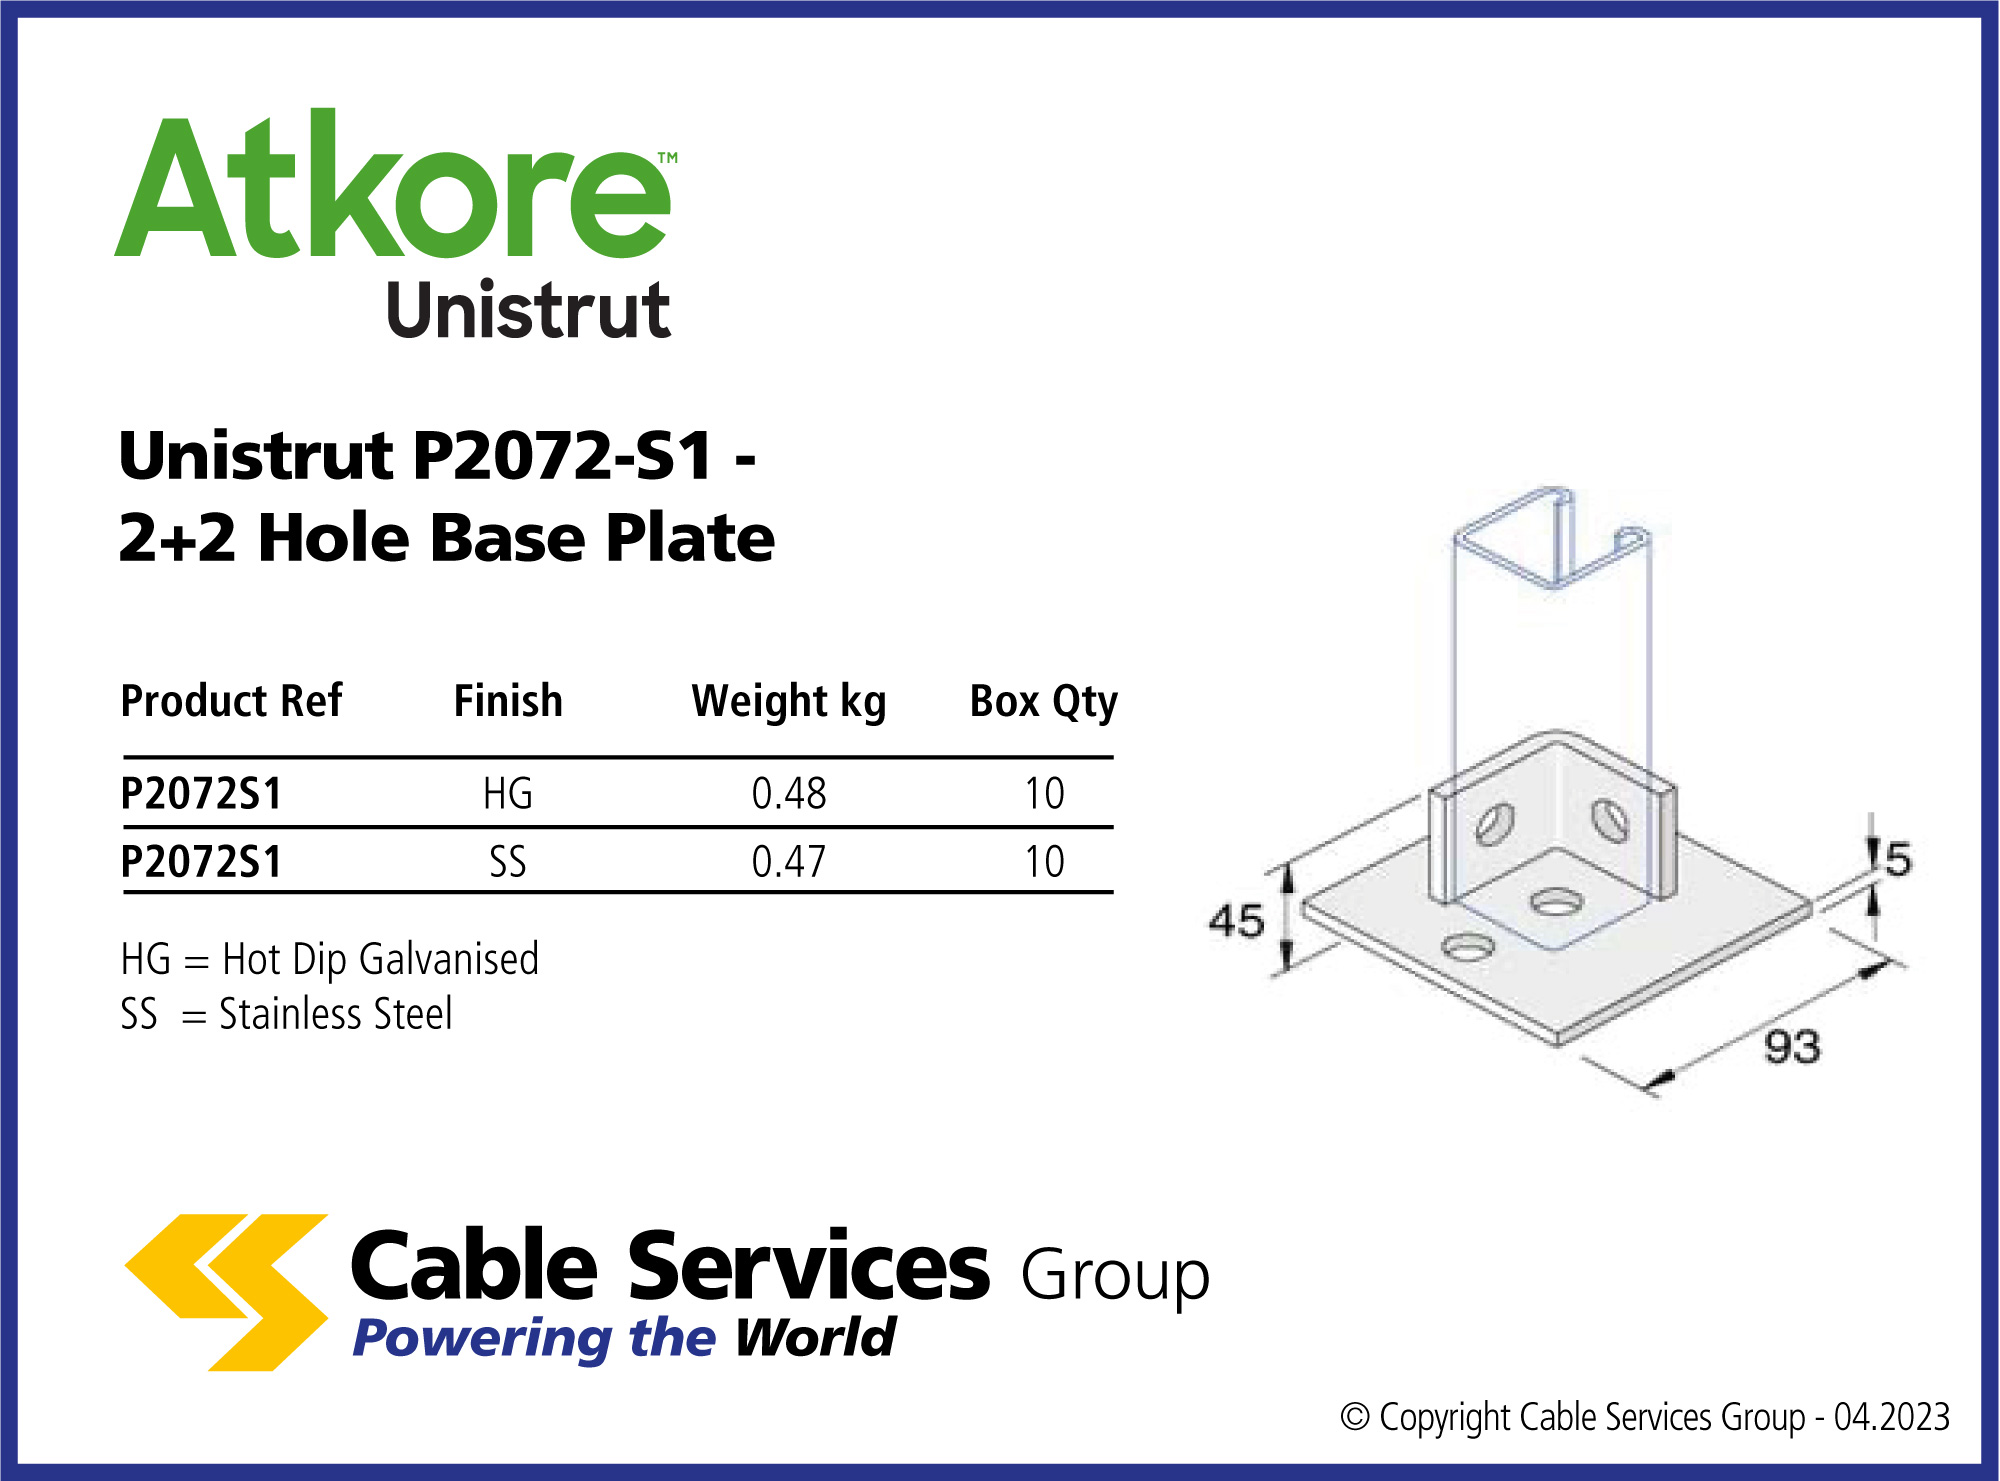 Unistrut P2072-S1 - 2+2 Hole Base Plate - Cable Services